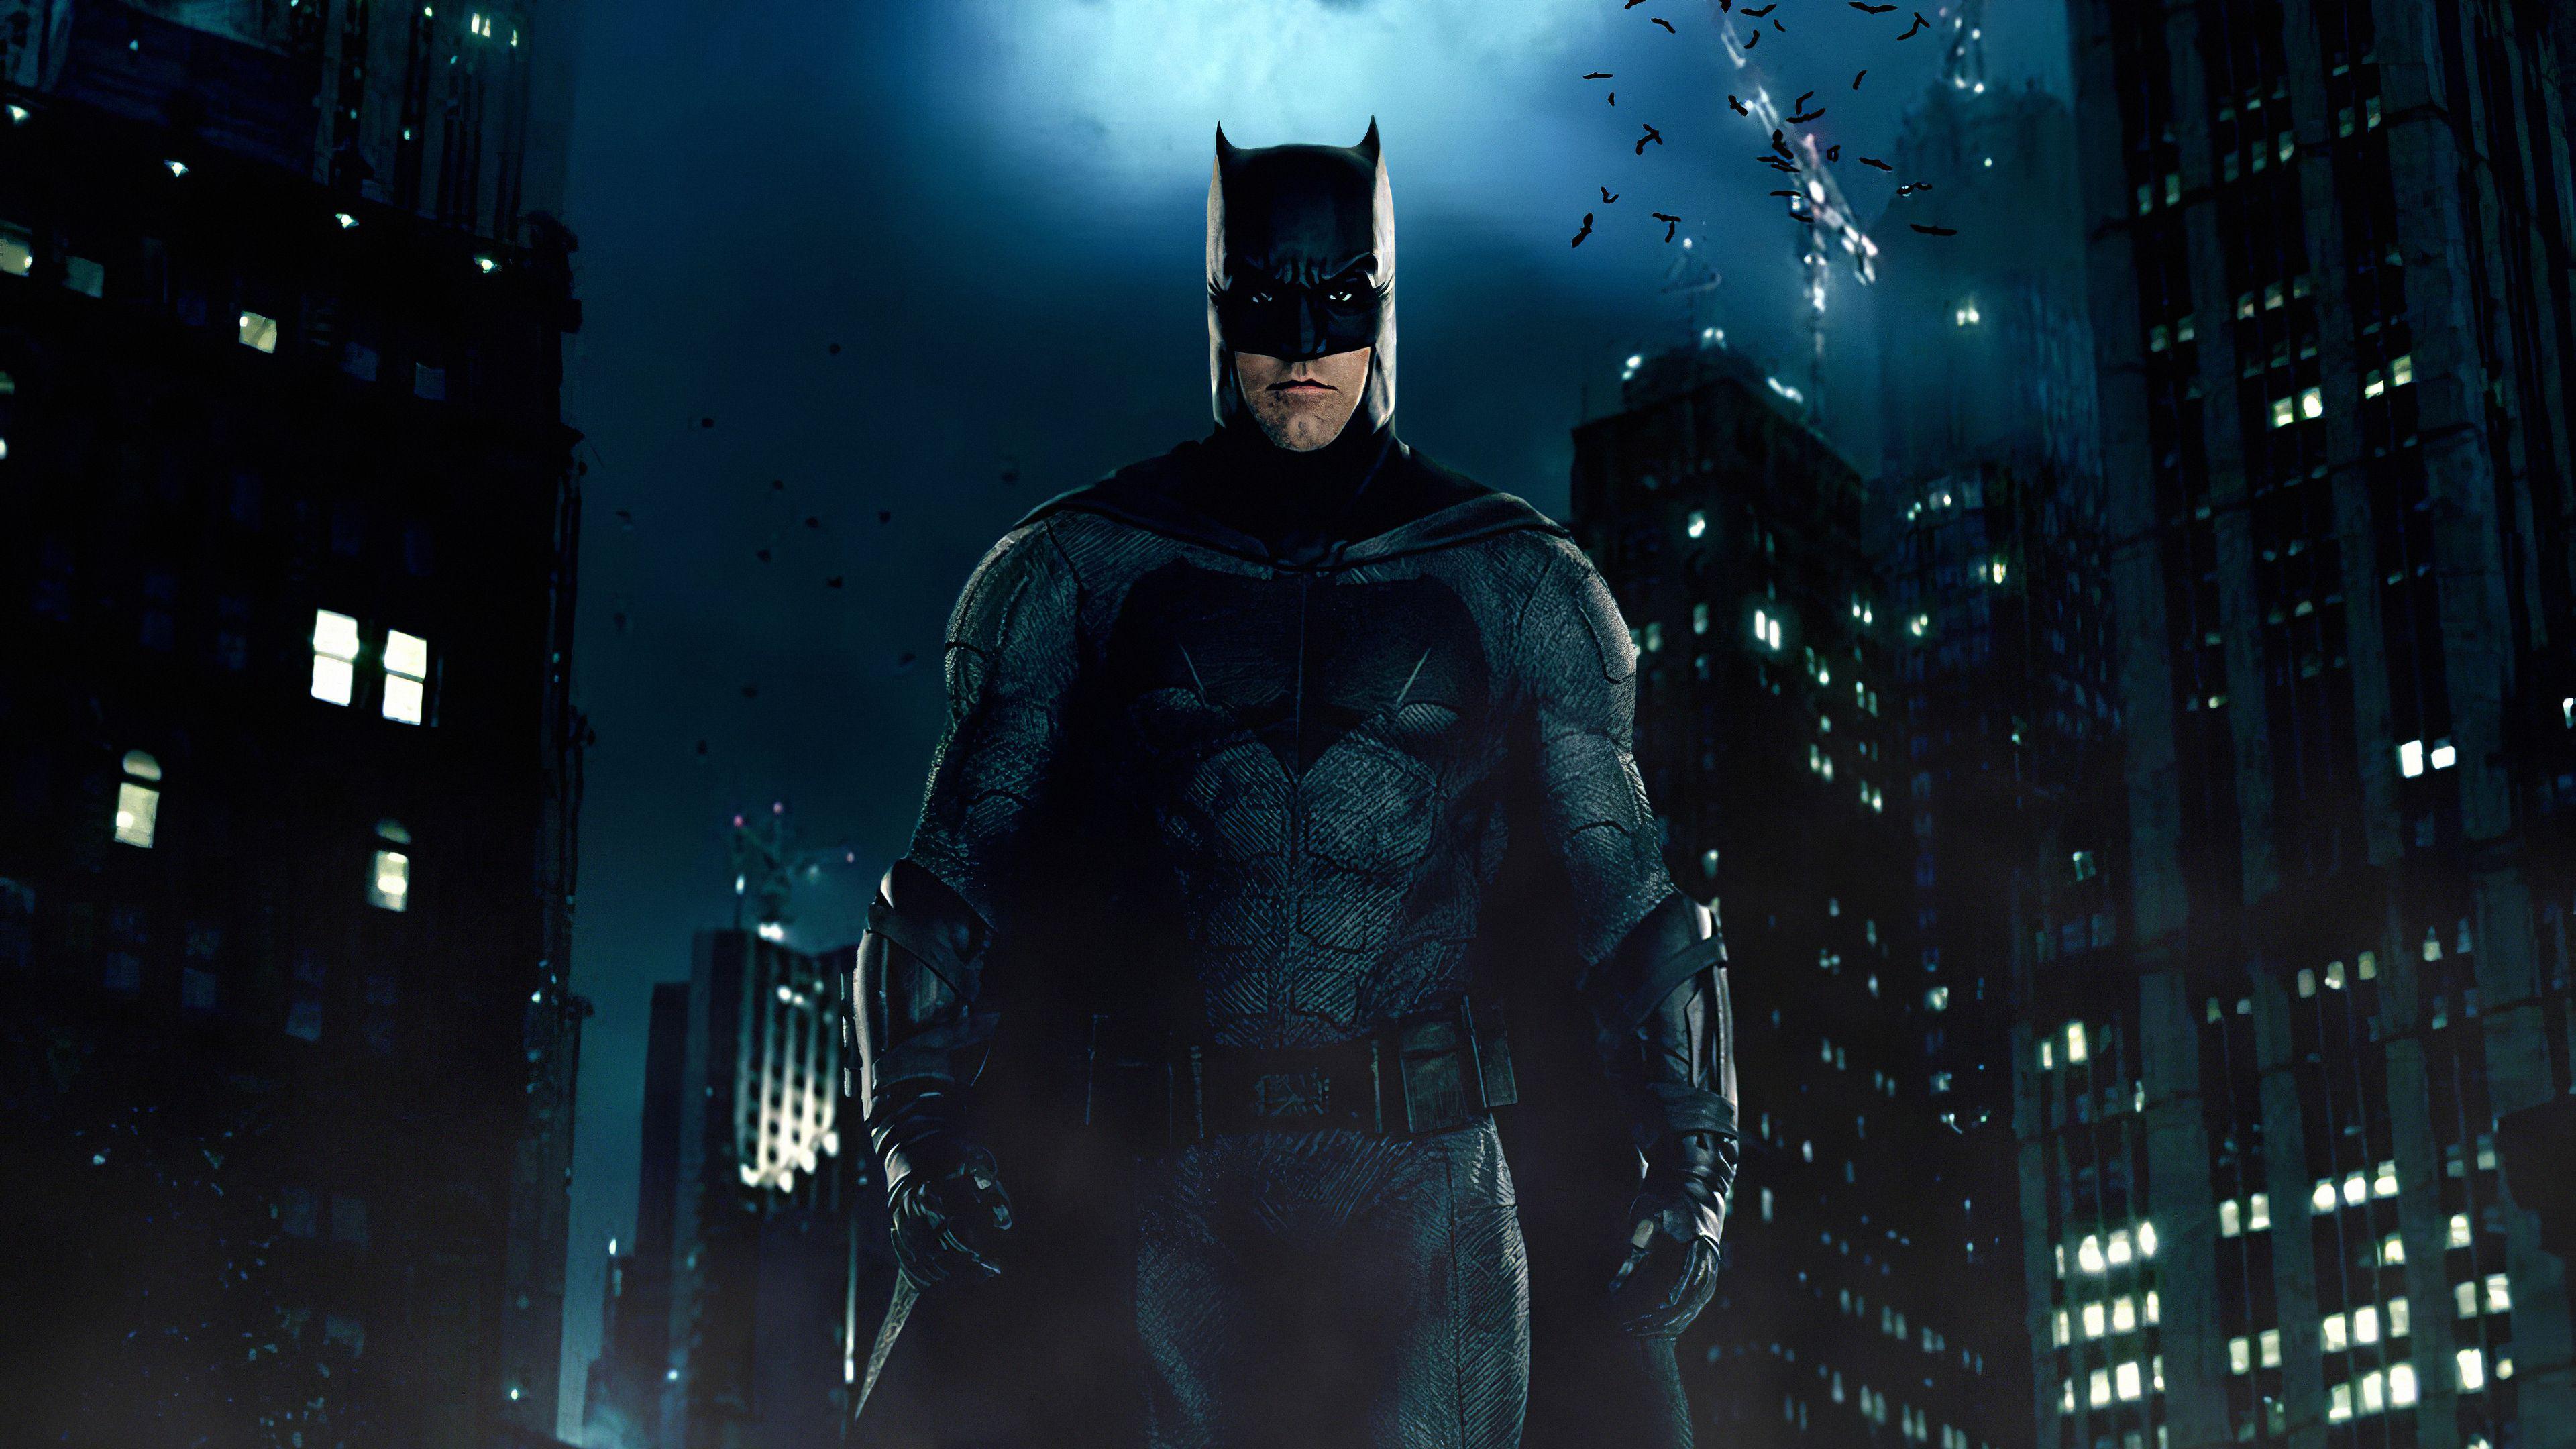 Batman 6. Бен Аффлек Бэтмен. Бен Аффлек Бэтмен темный рыцарь. Бэтмен тёмный рыцарь Возрождение.